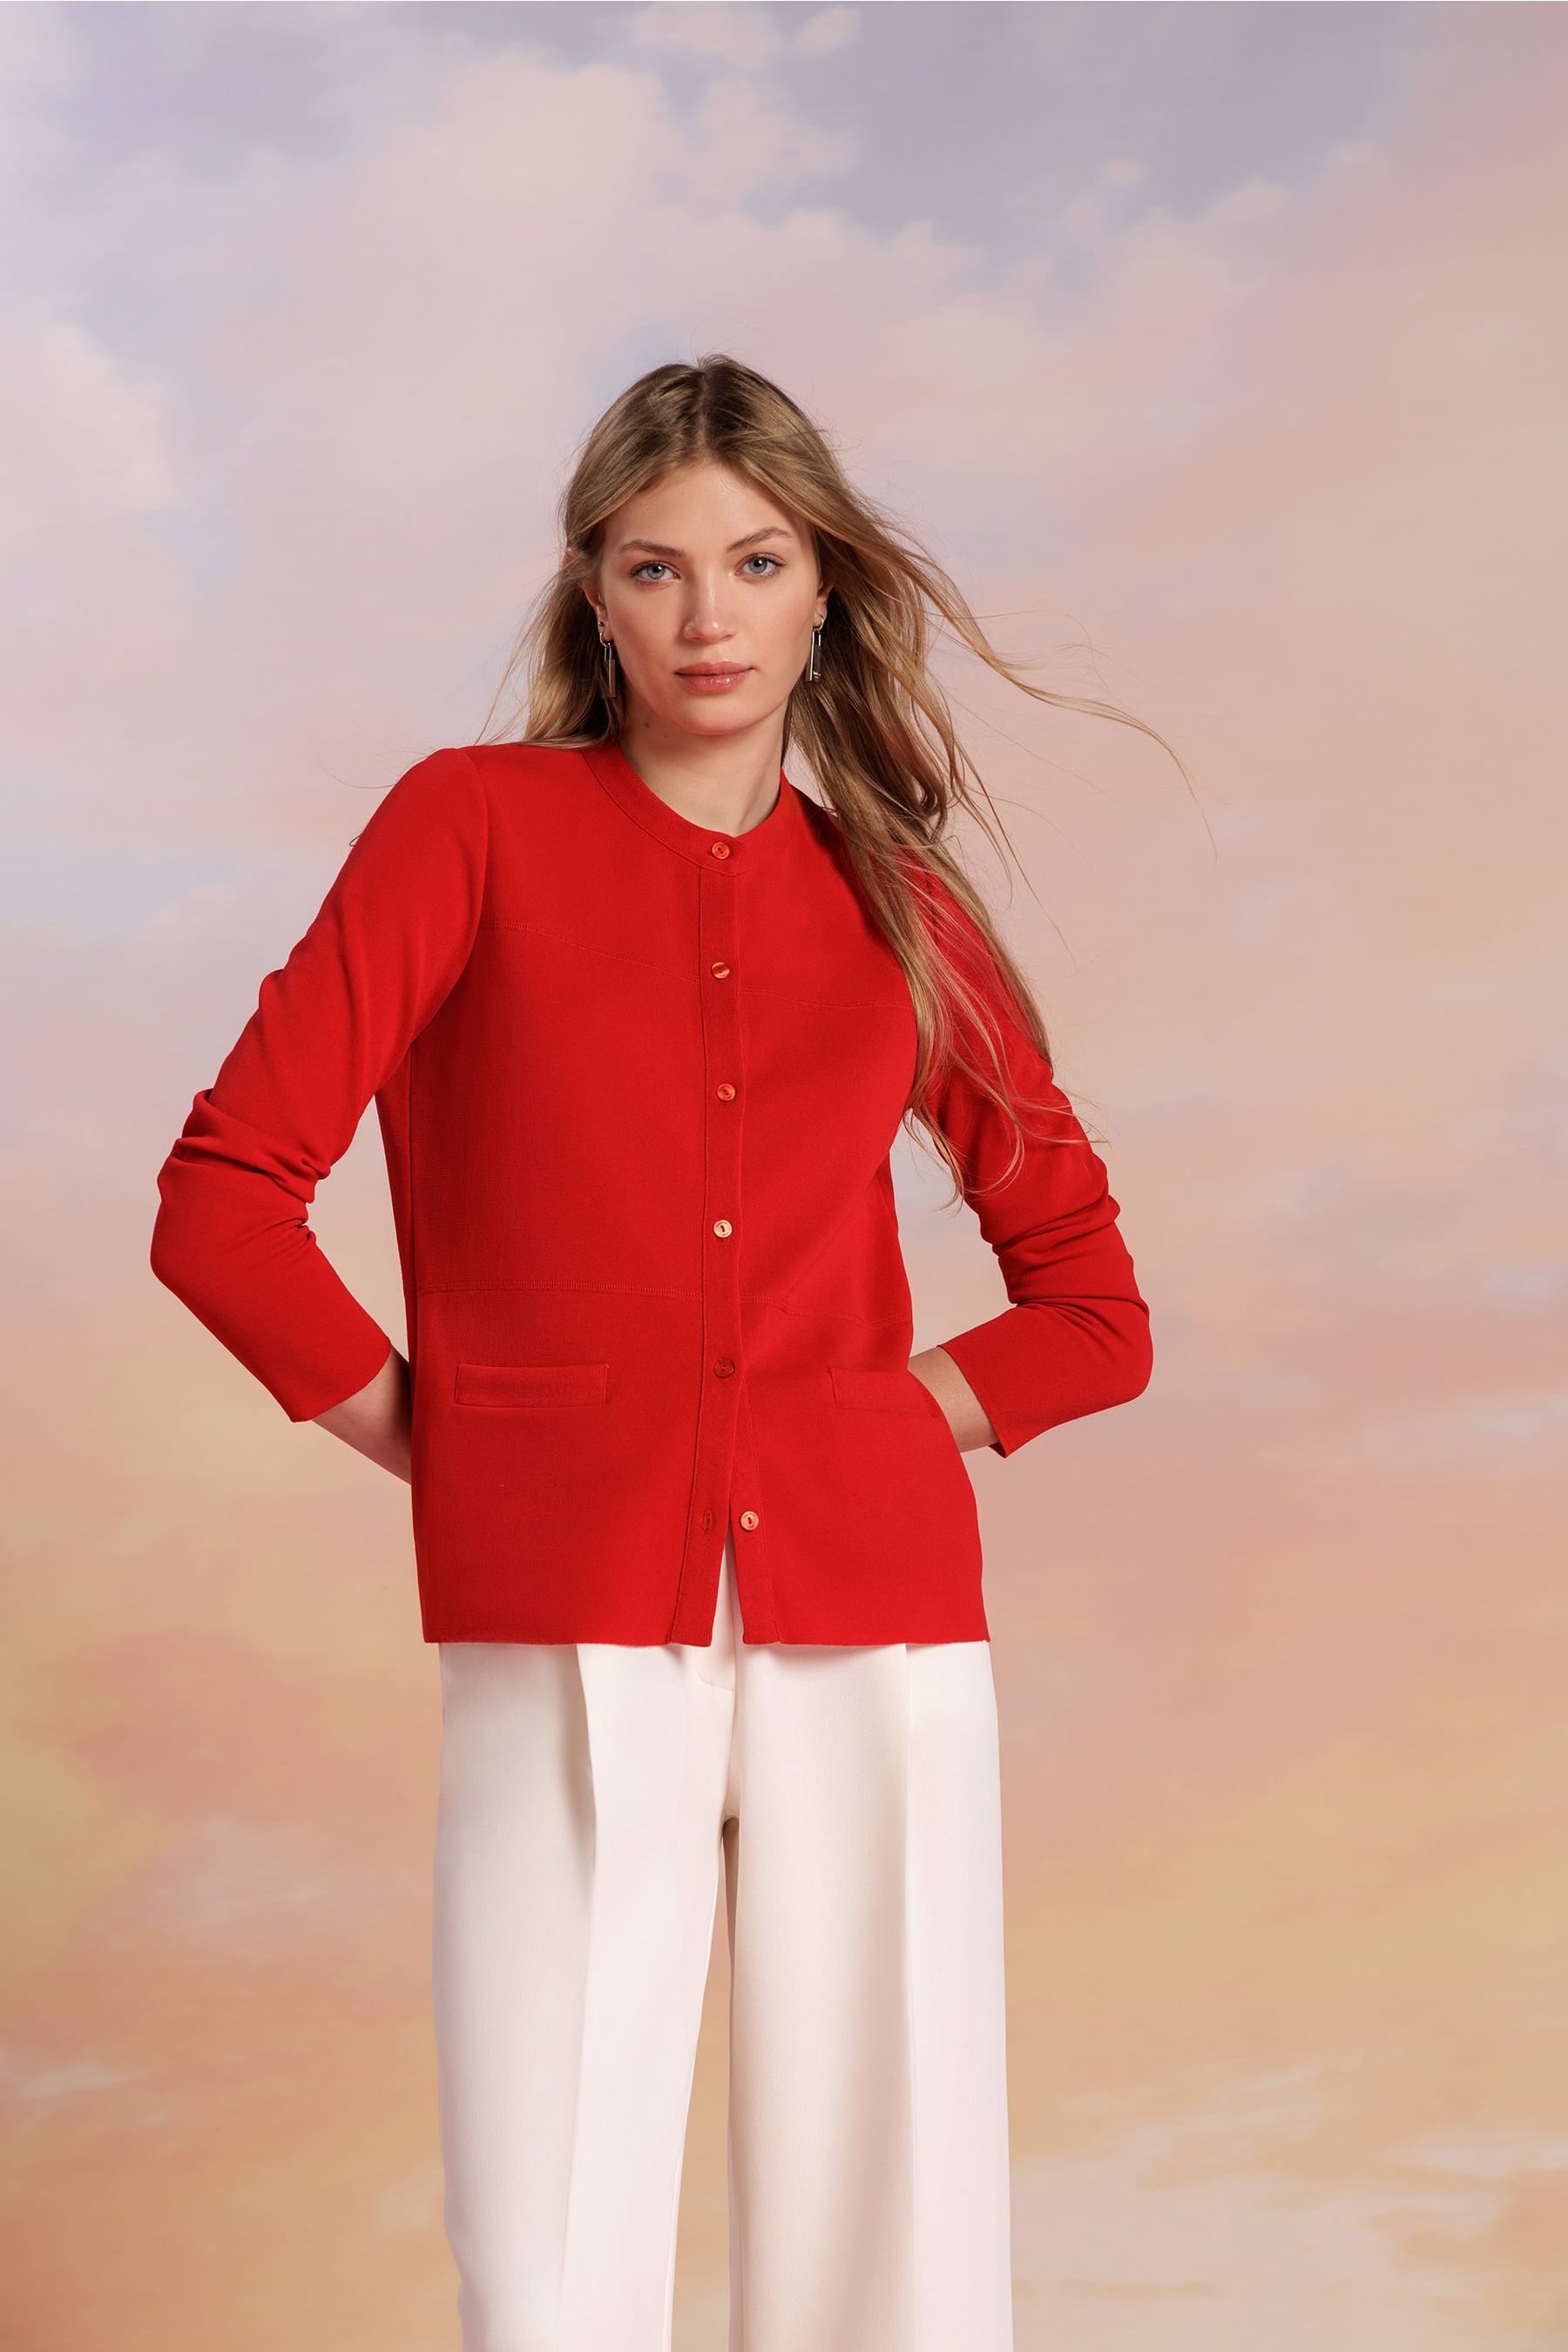 Mujer con una chaqueta roja y unos pantalones fluidos con pinzas de color blanco